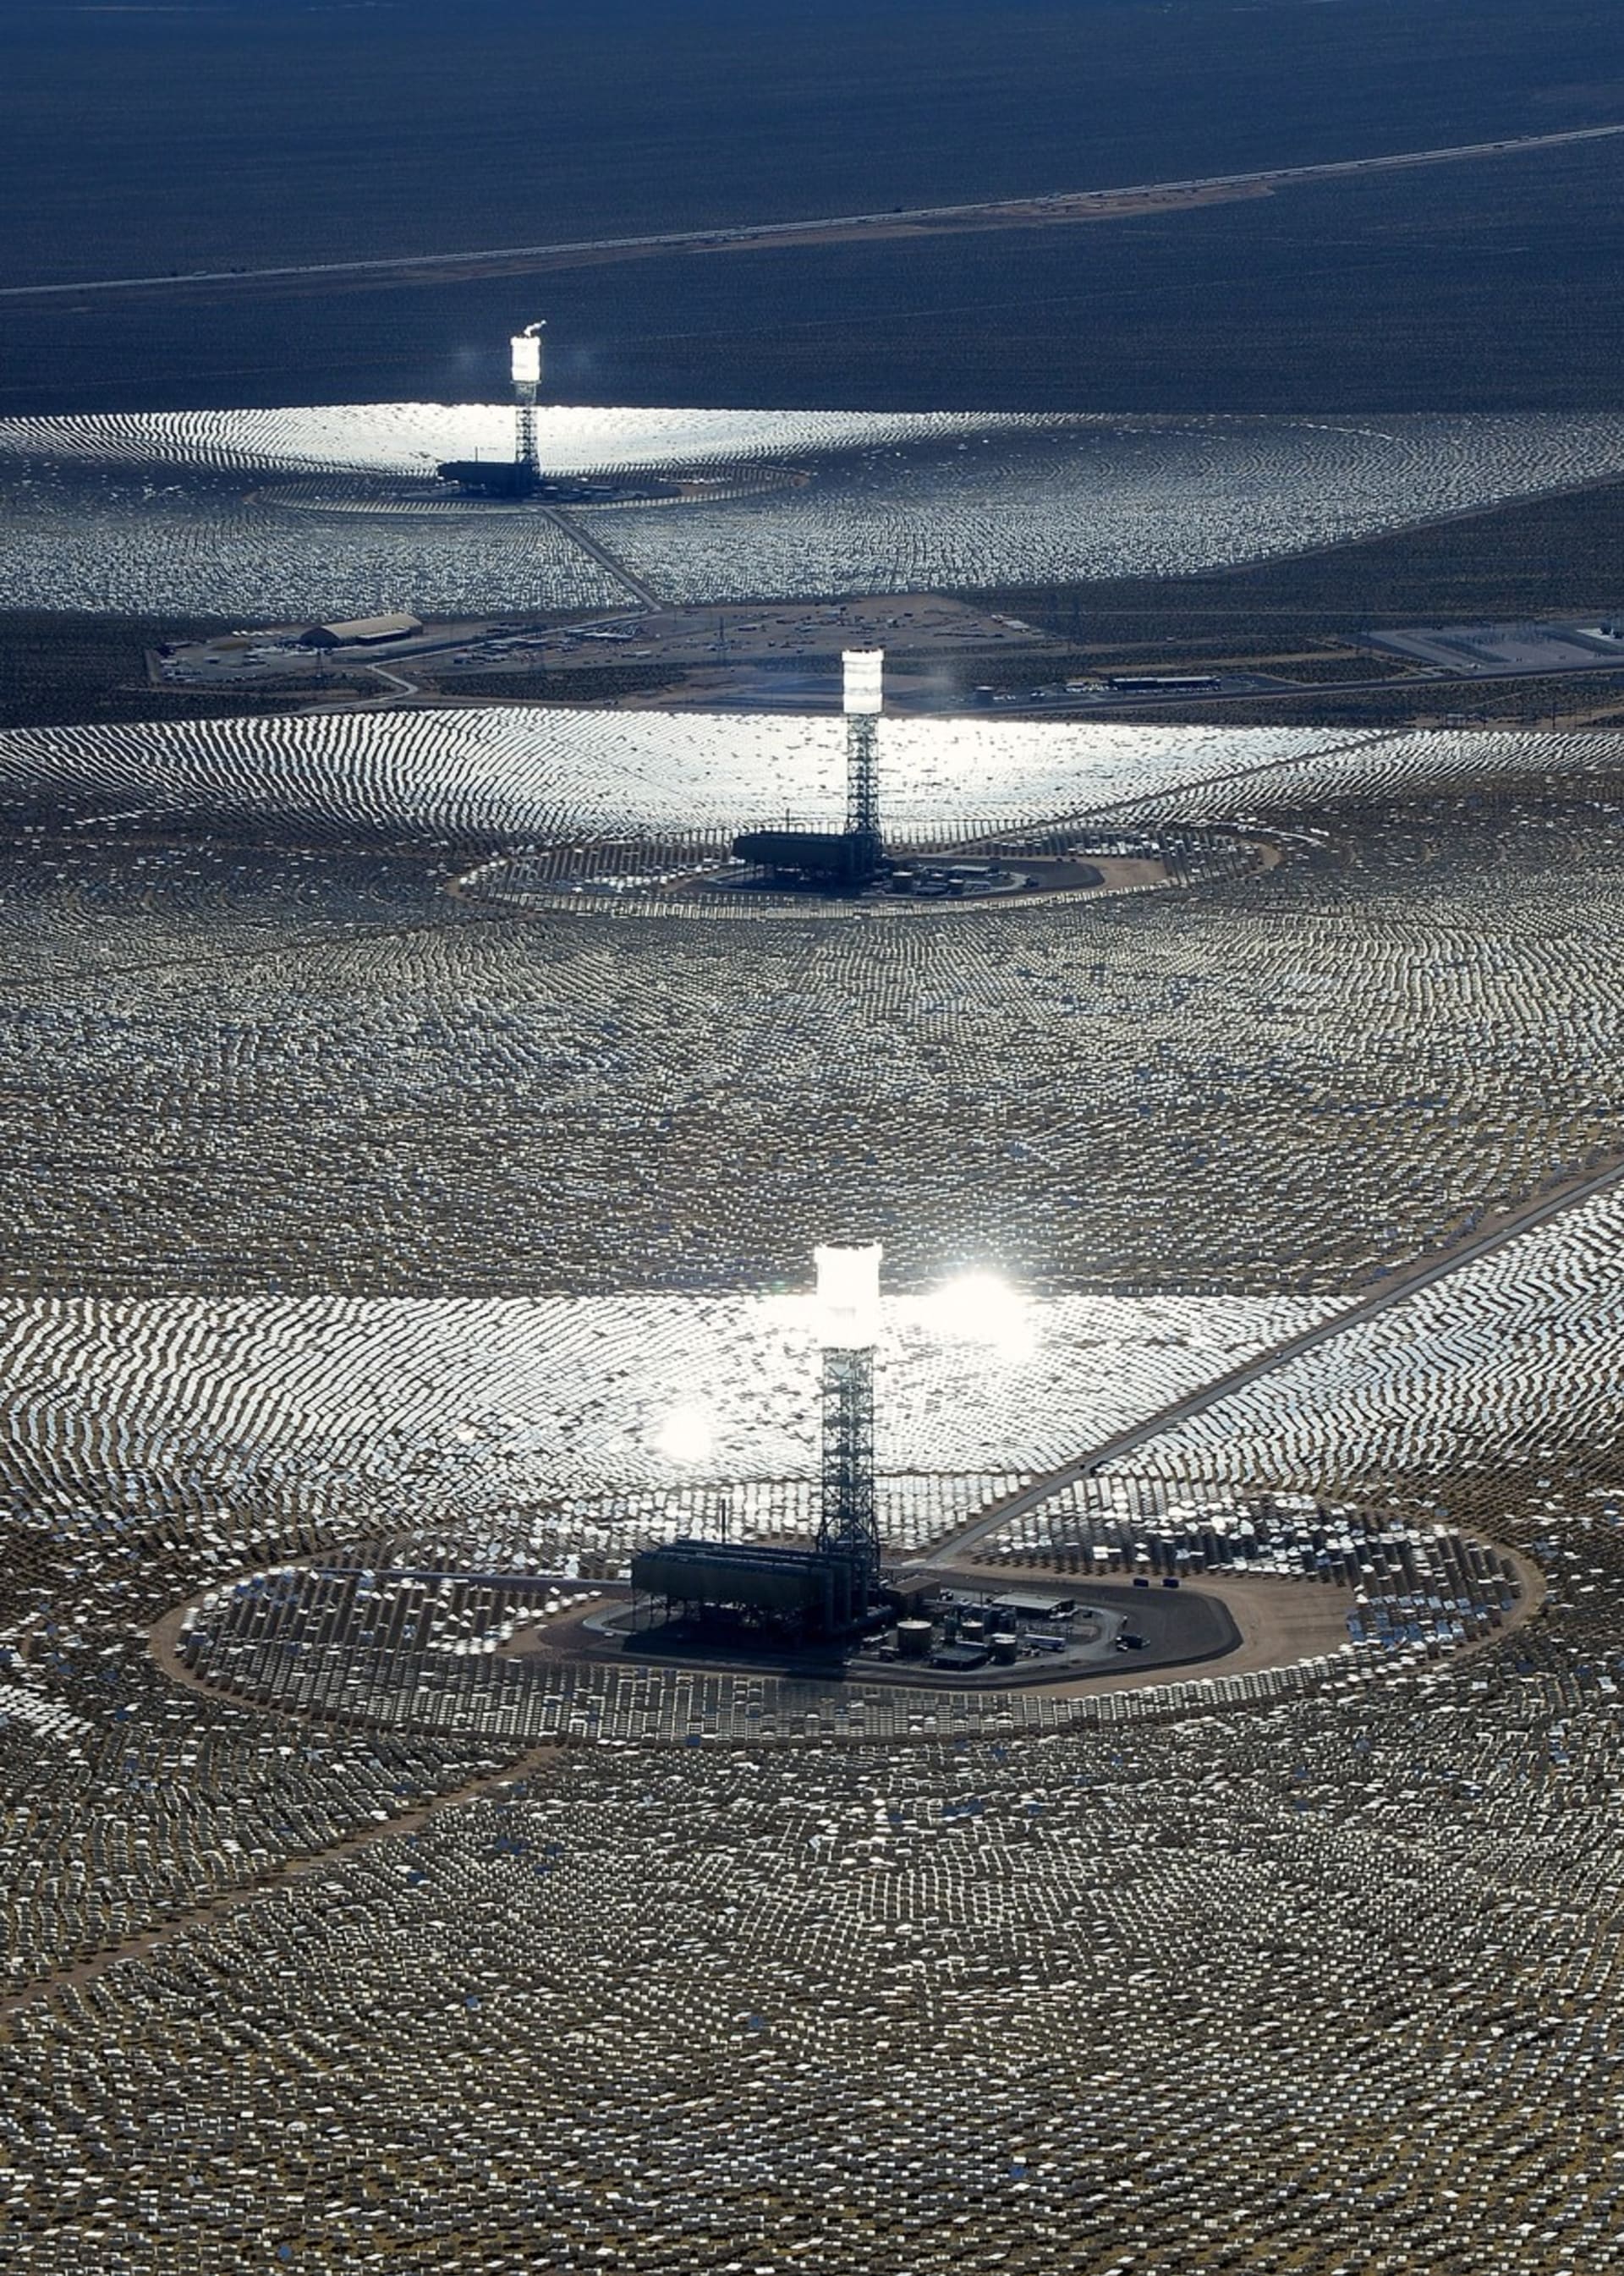 Solární elektrárna Ivanpah v Mohavské poušti má výkon 392 MW a jedním z jejích investorů je i Google